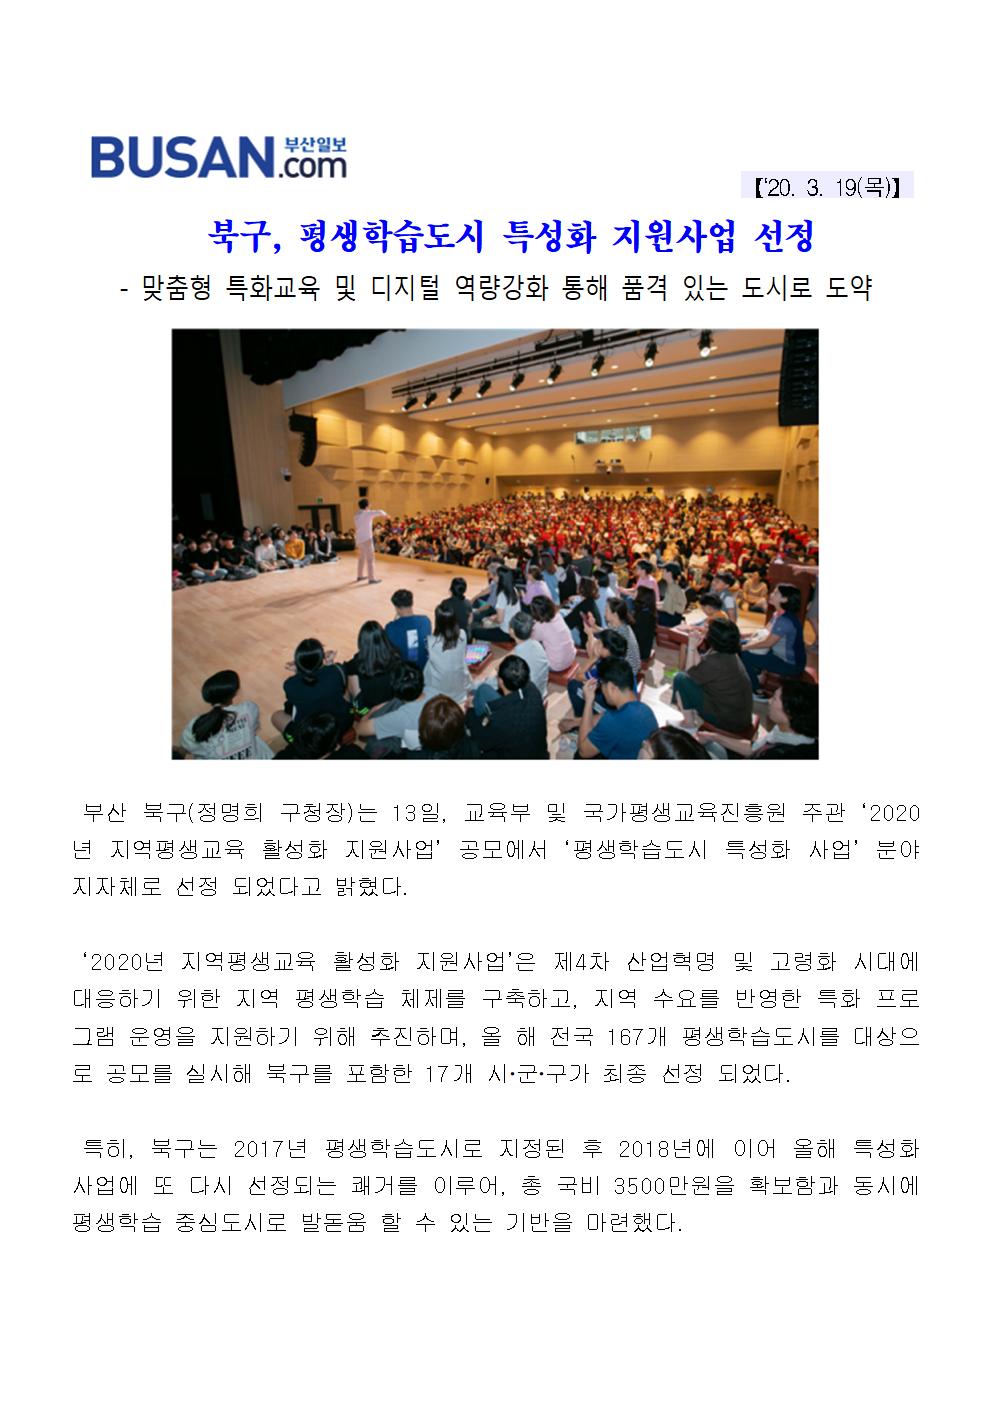 북구 평생학습도시 특성화 지원사업 선정(3-1-9)